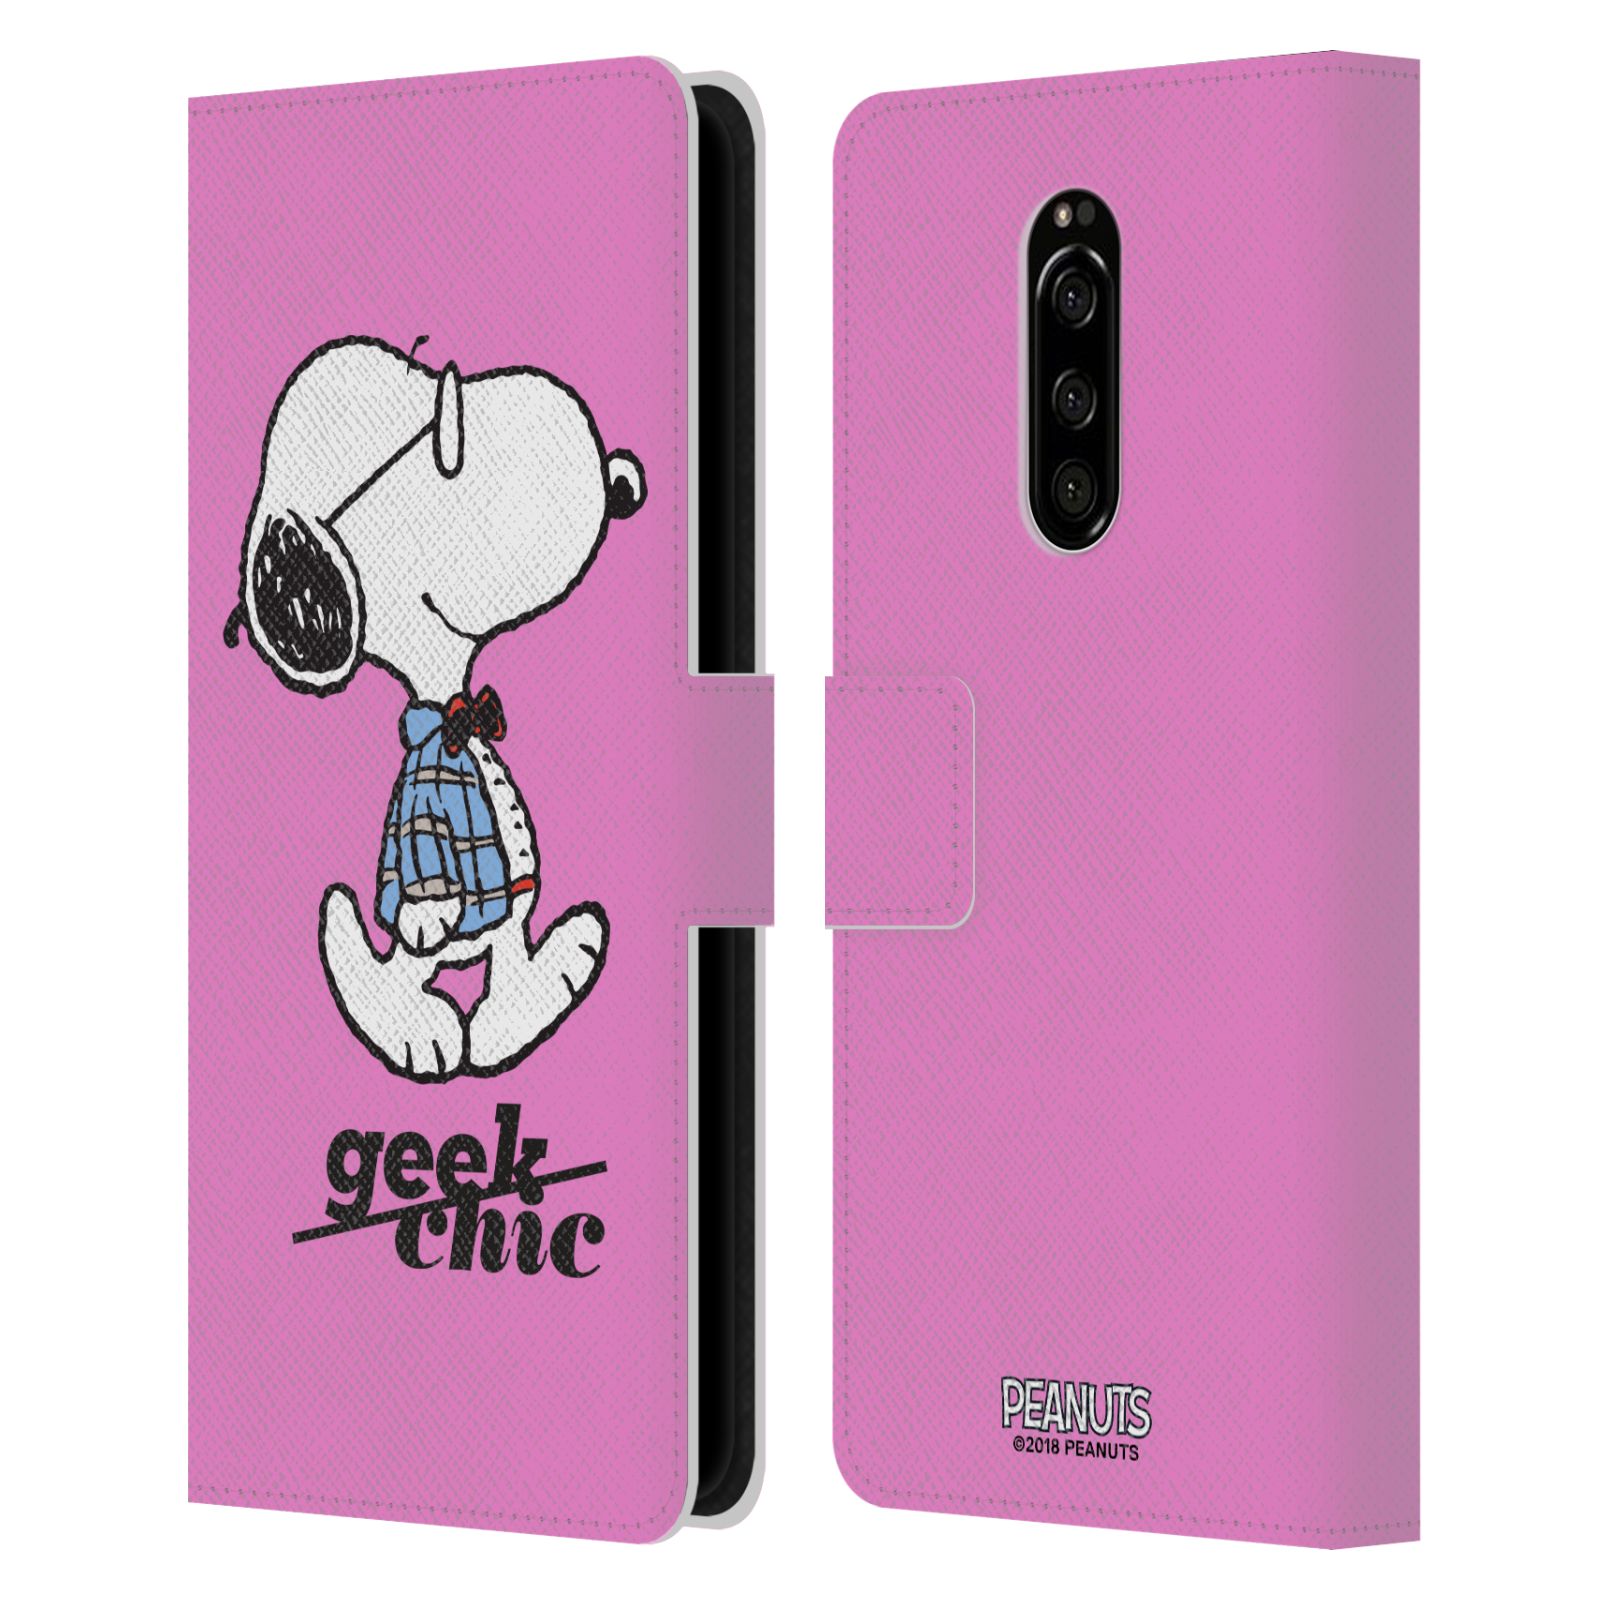 Pouzdro na mobil Sony Xperia 1 - Head Case - Peanuts - růžový pejsek snoopy nerd